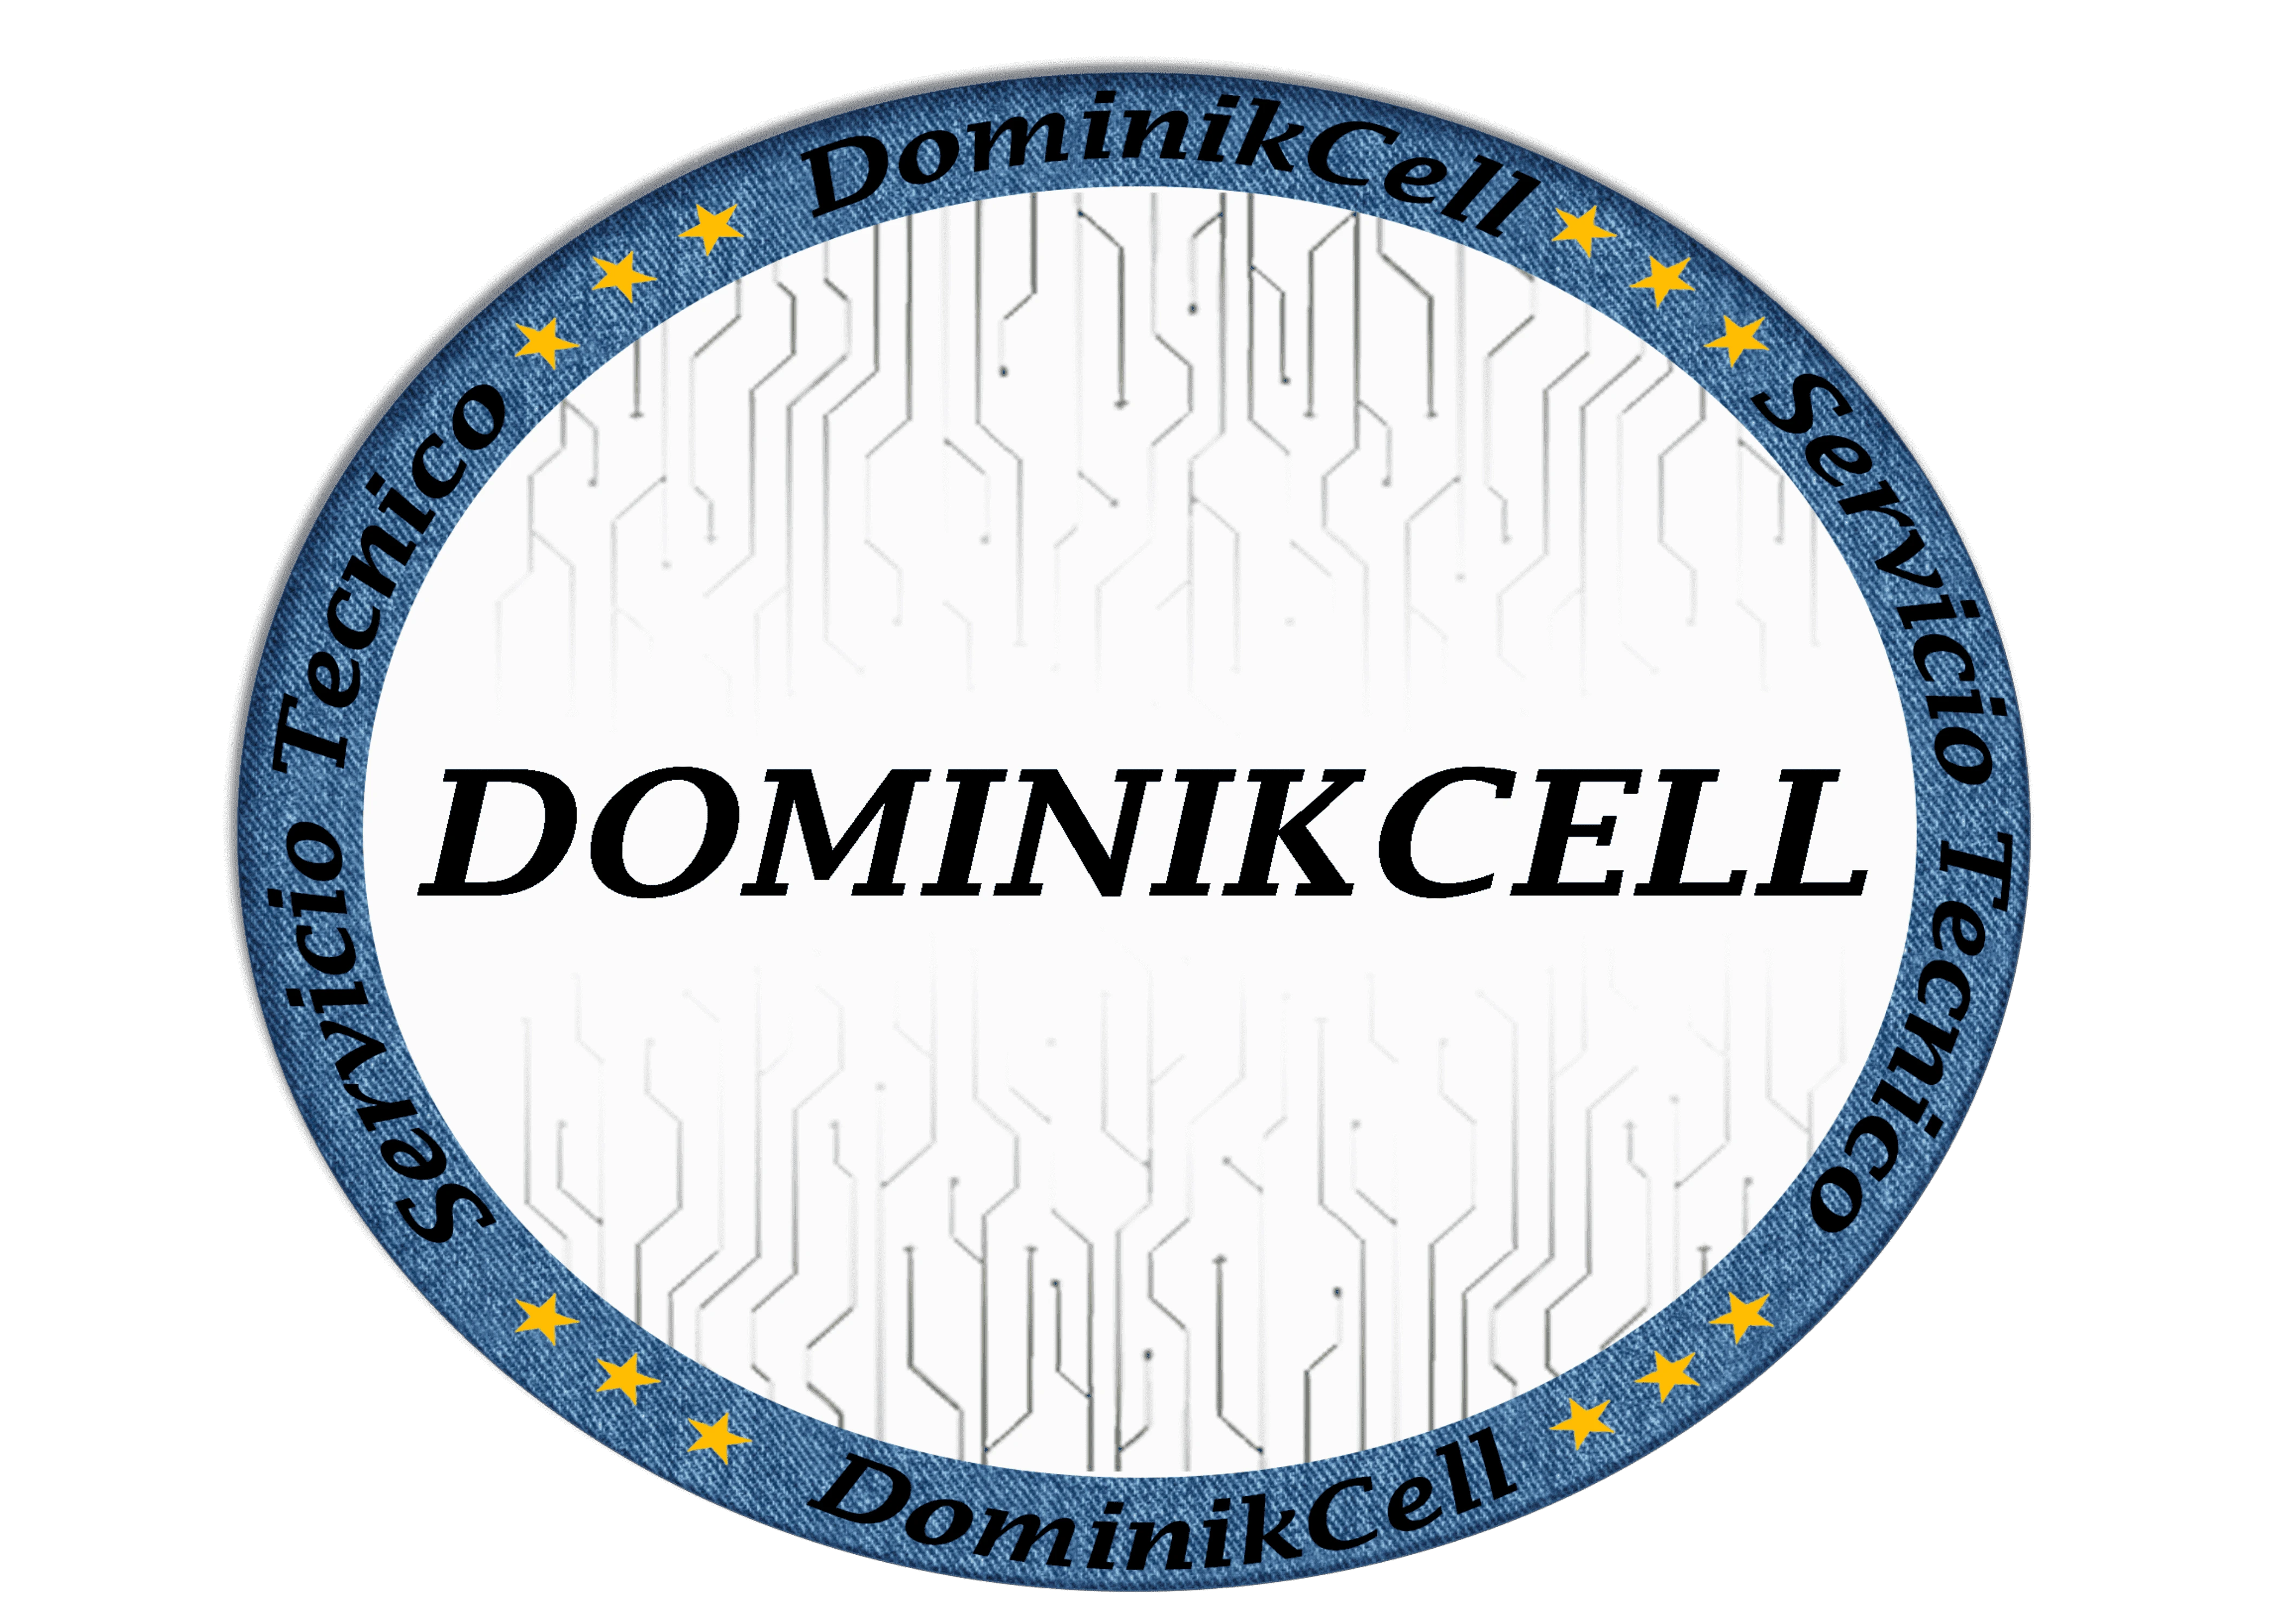 Logo Dominikcell Servicio tecnico especializado